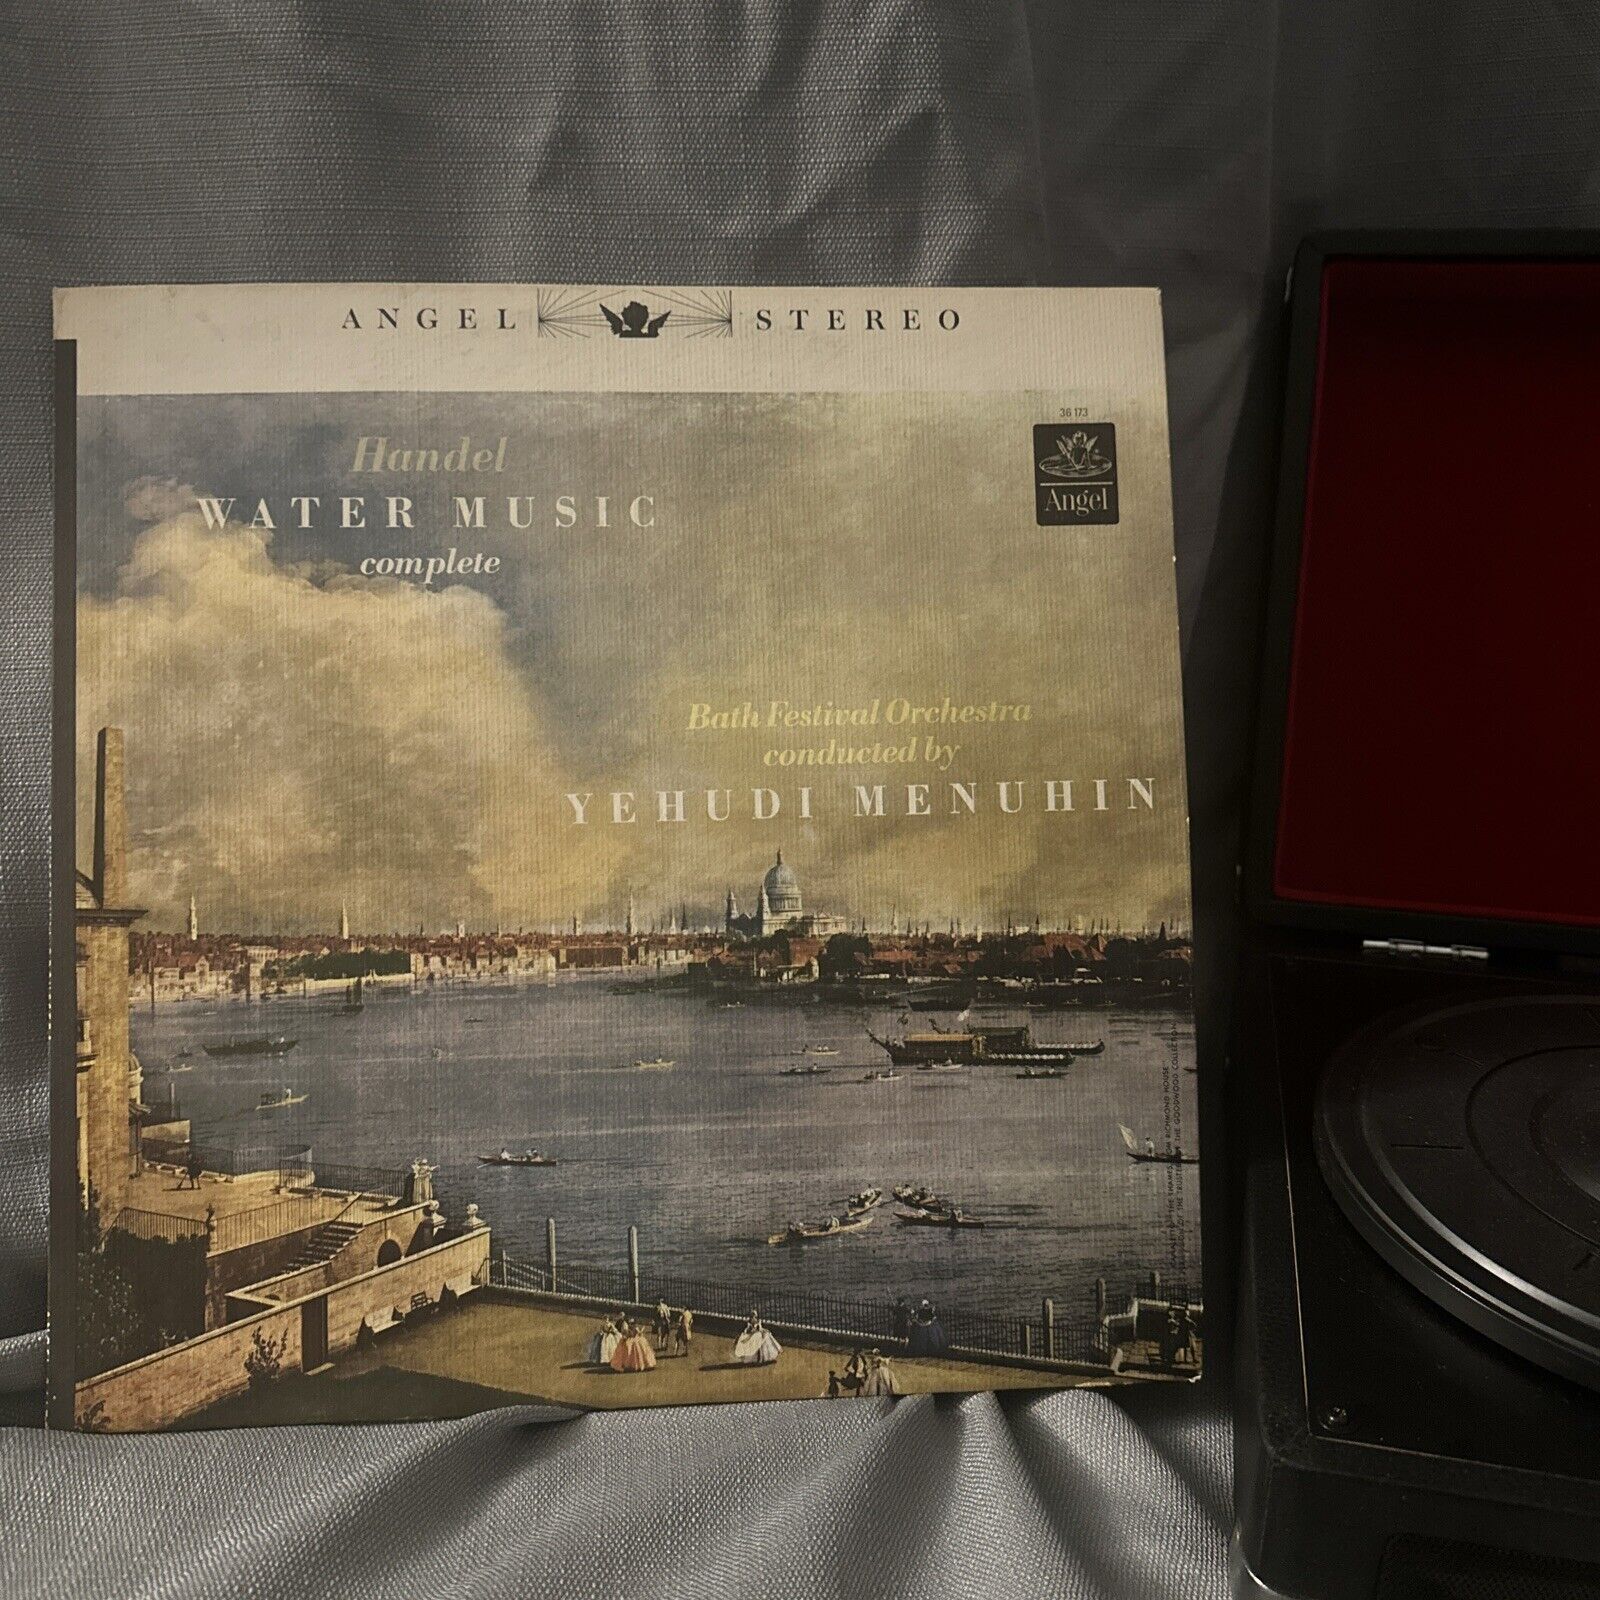 Handel: Water Music Complete - Yehudi Menuhin & Bath Orchestra (36173) Vinyl Lp